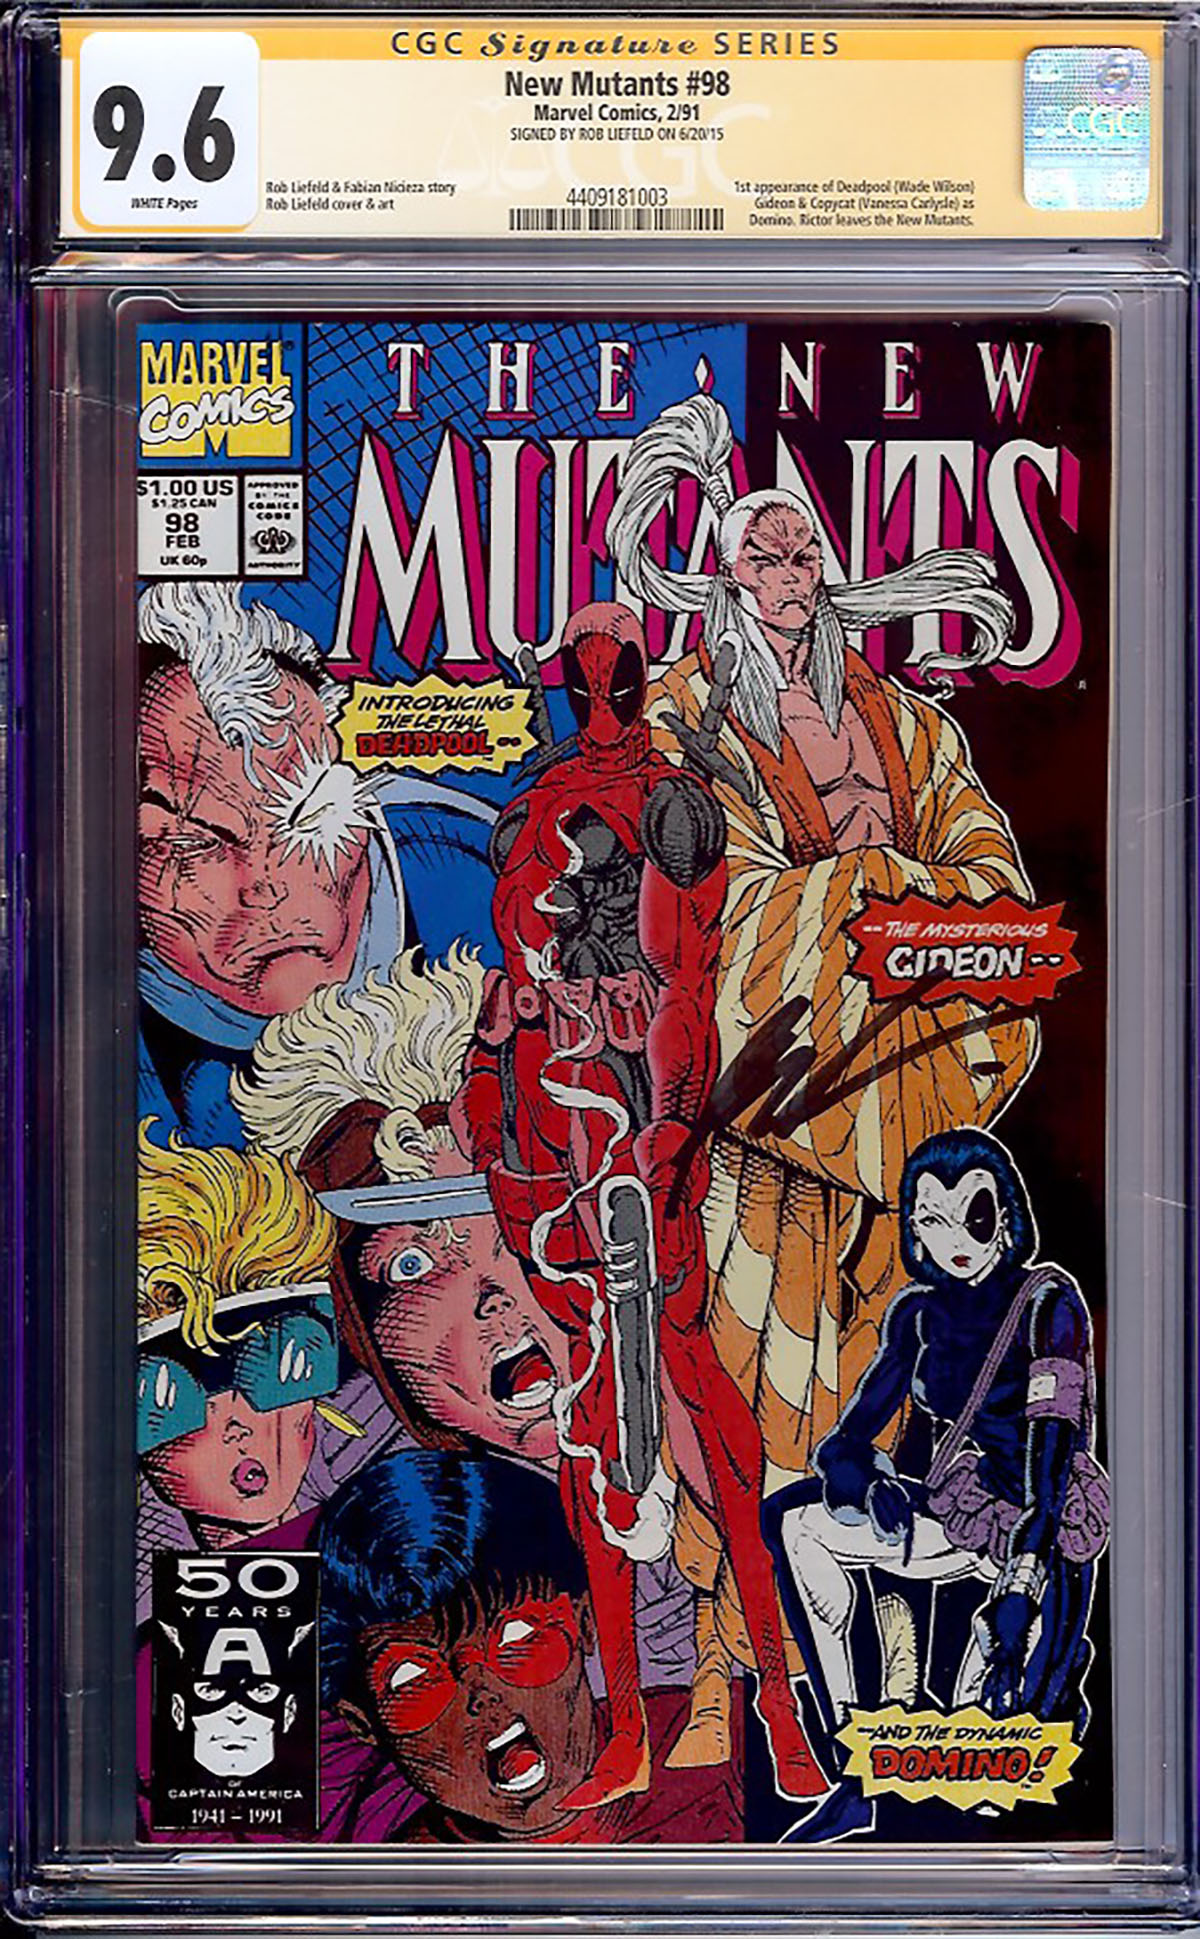 New Mutants #98 CGC 9.6 w CGC Signature SERIES